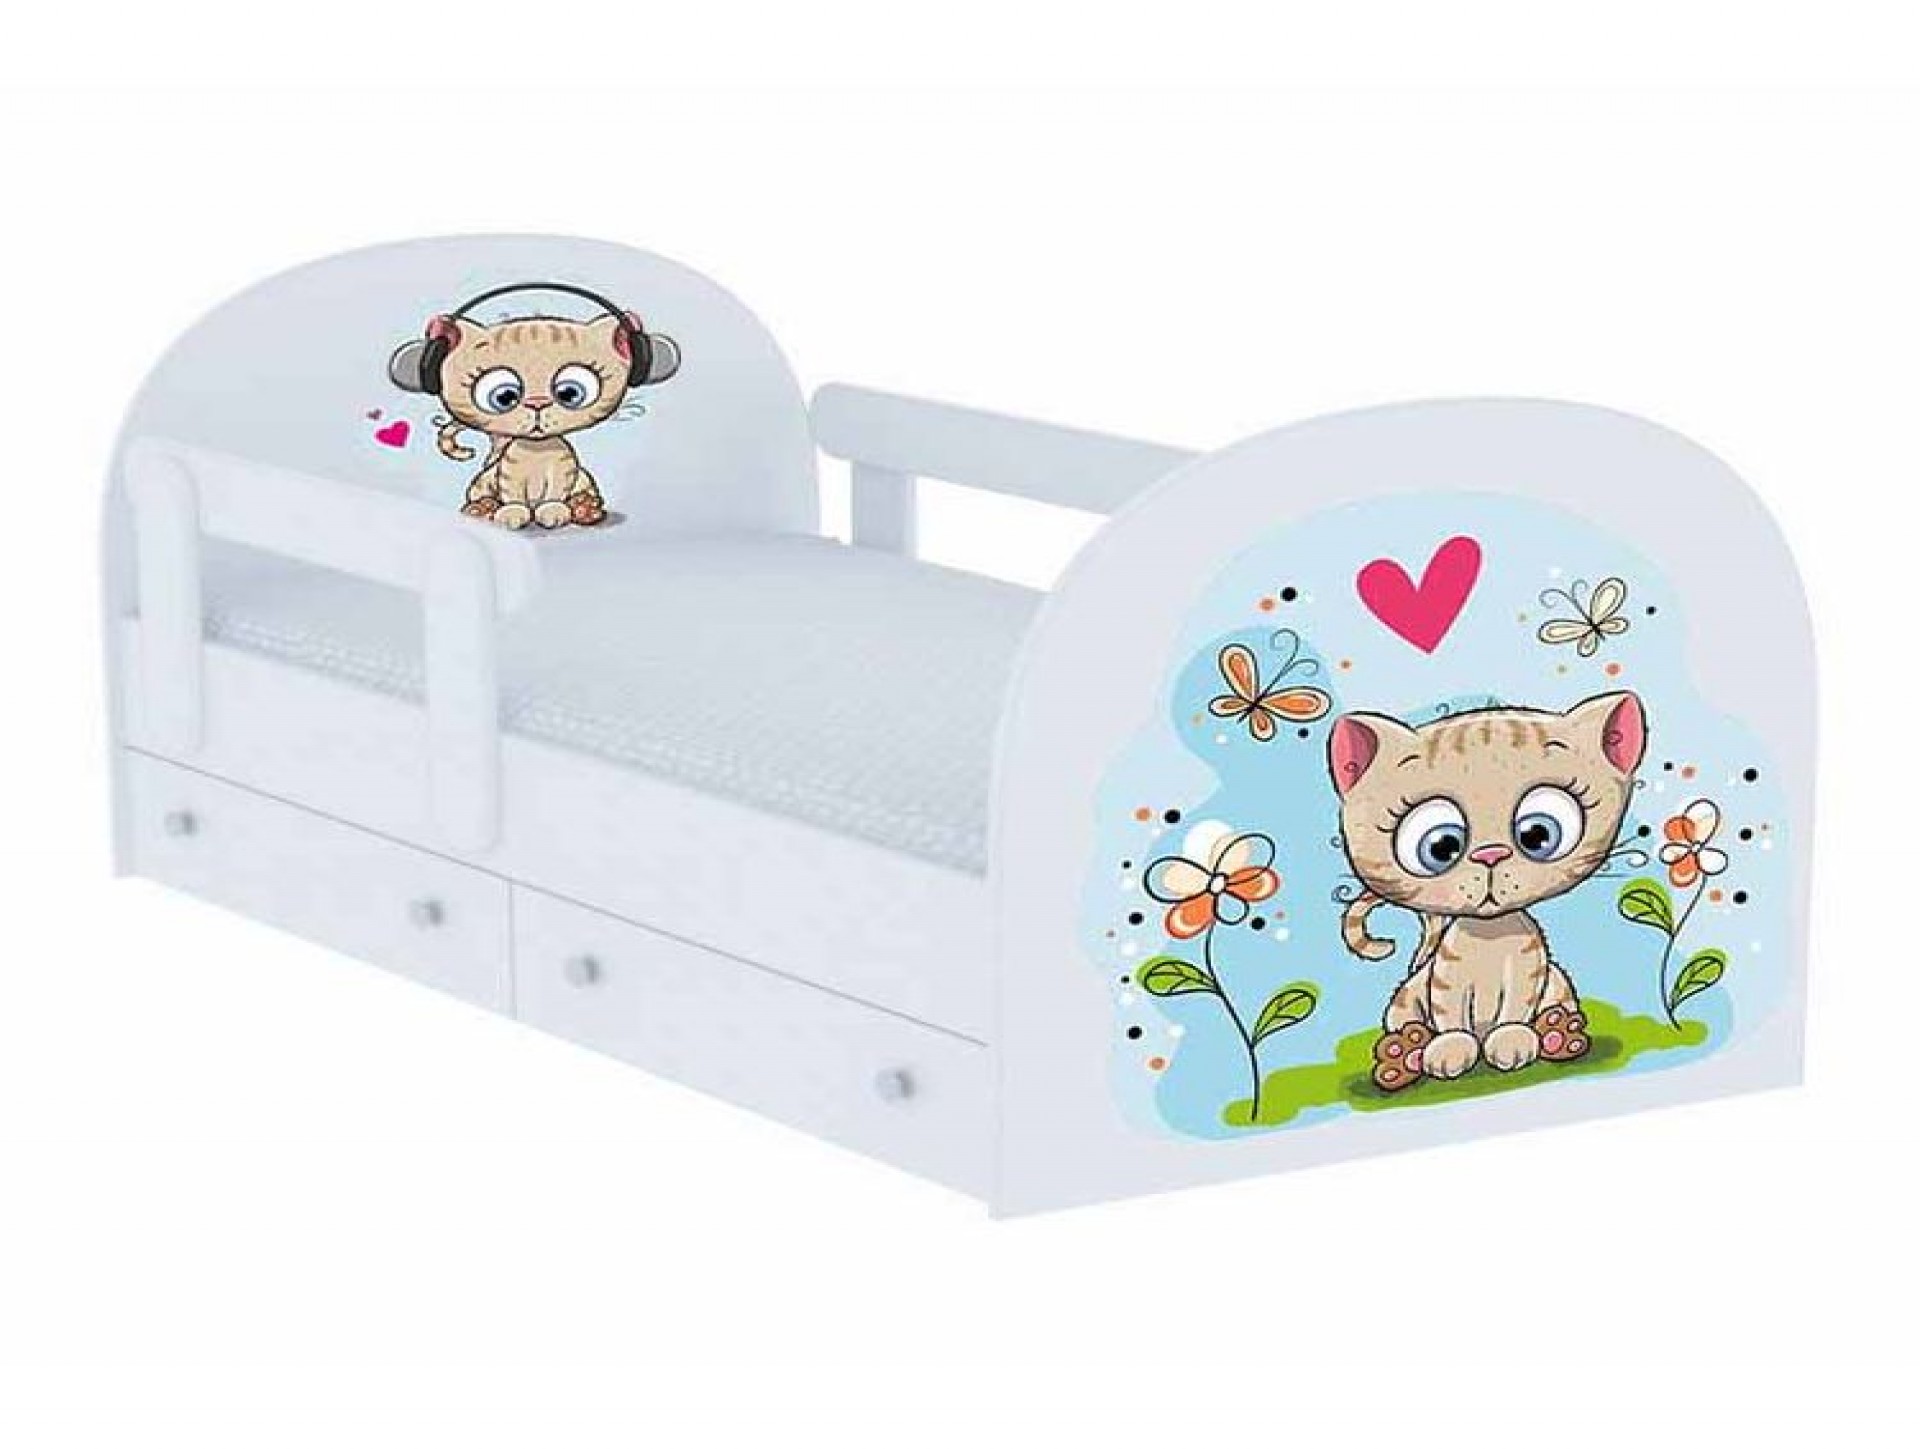 Детская кровать с бортиком